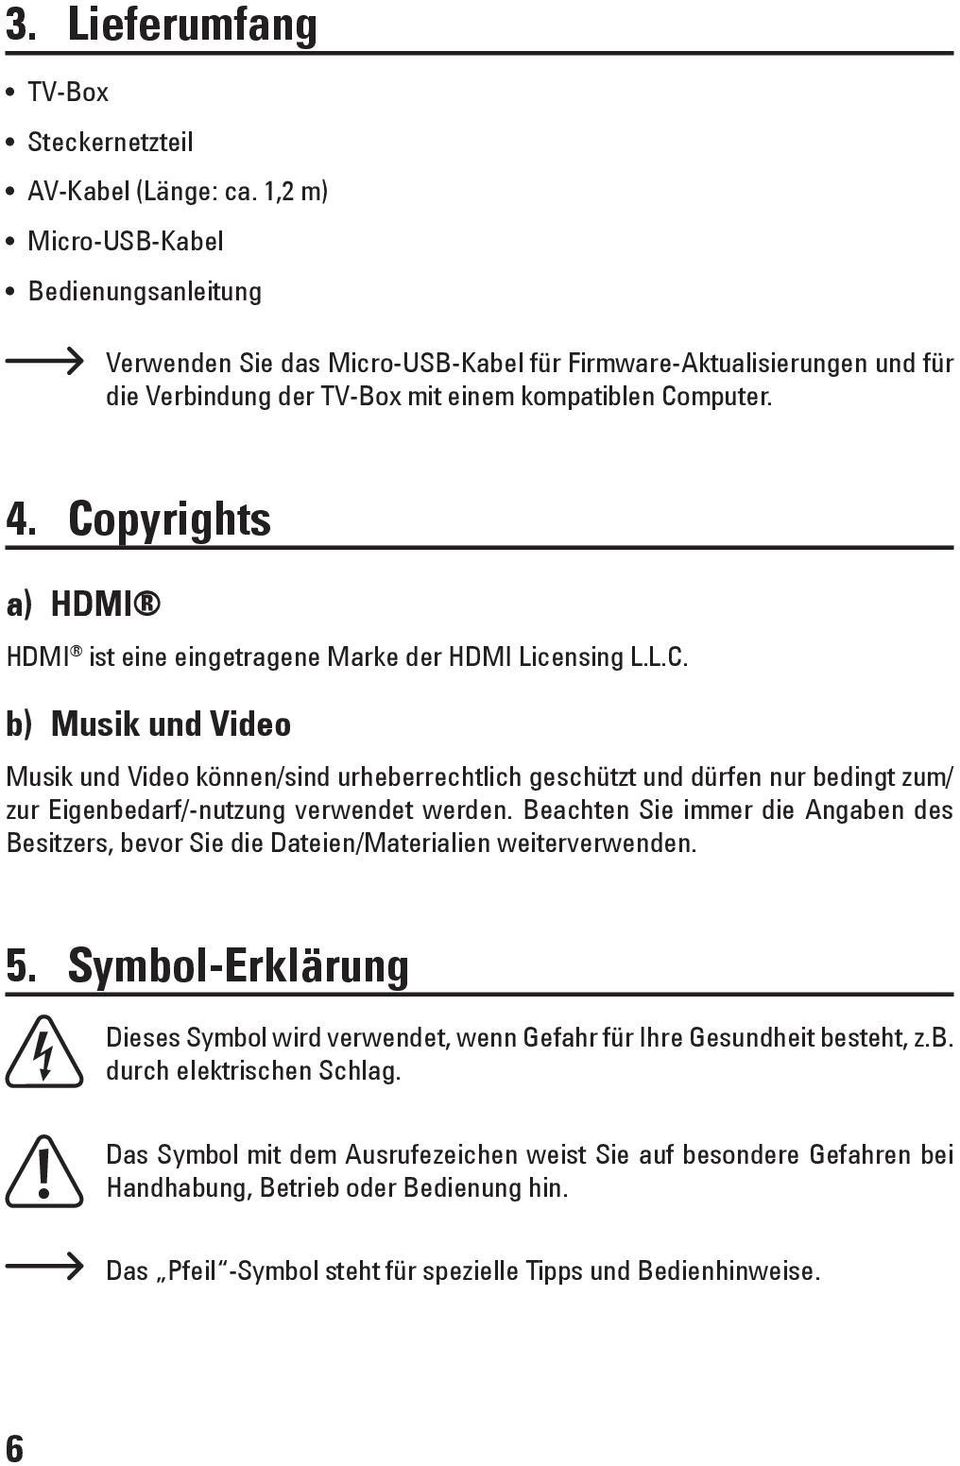 Copyrights a) HDMI HDMI ist eine eingetragene Marke der HDMI Licensing L.L.C. b) Musik und Video Musik und Video können/sind urheberrechtlich geschützt und dürfen nur bedingt zum/ zur Eigenbedarf/-nutzung verwendet werden.